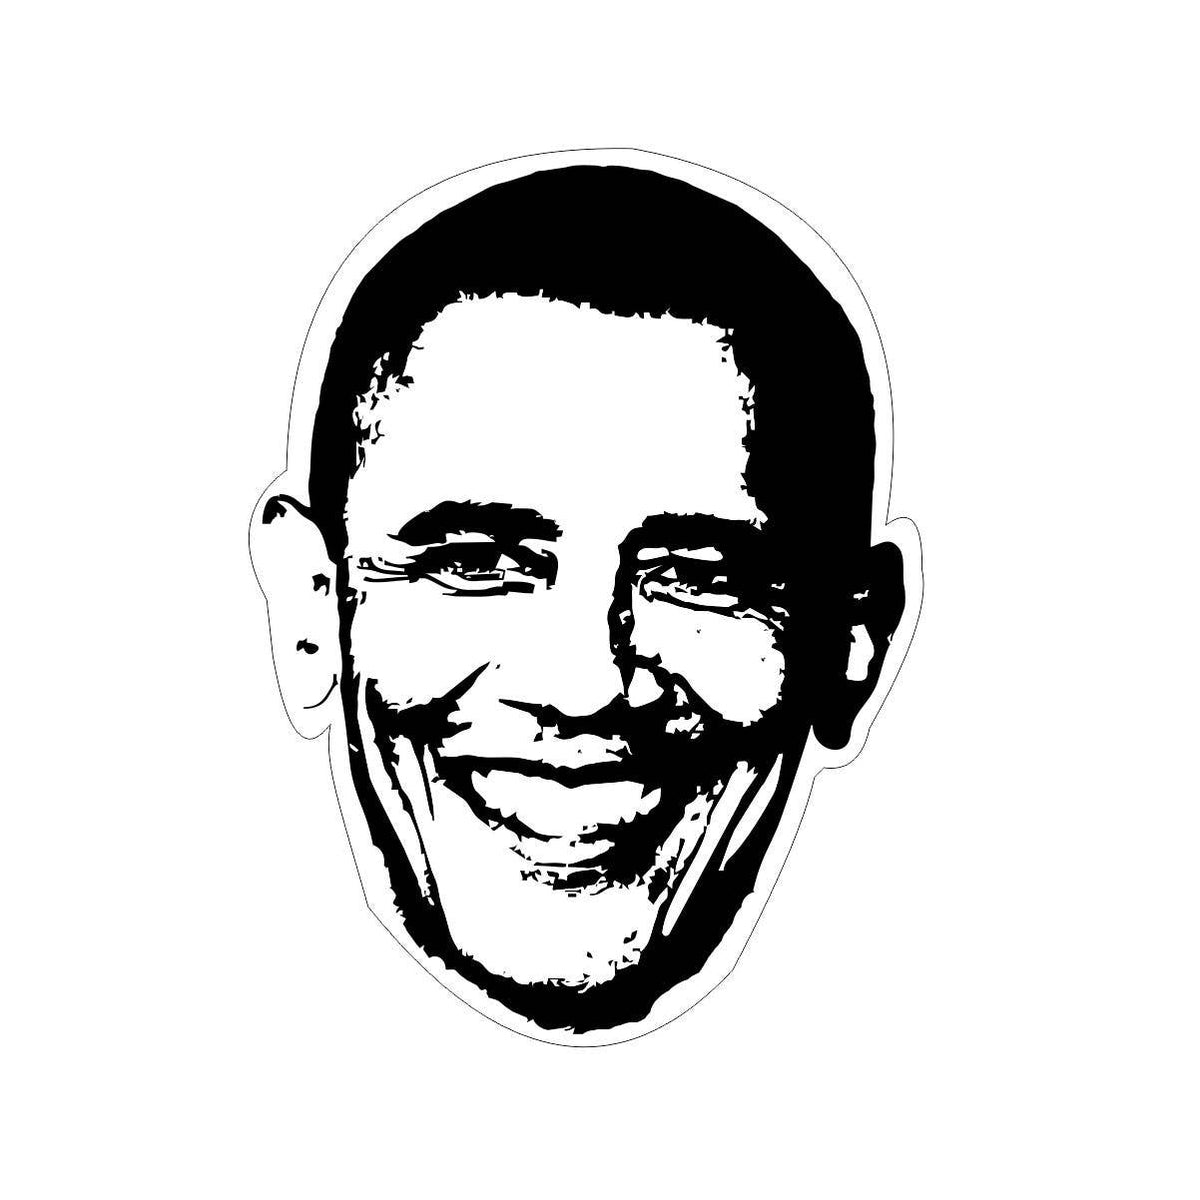 Barack Obama Sticker